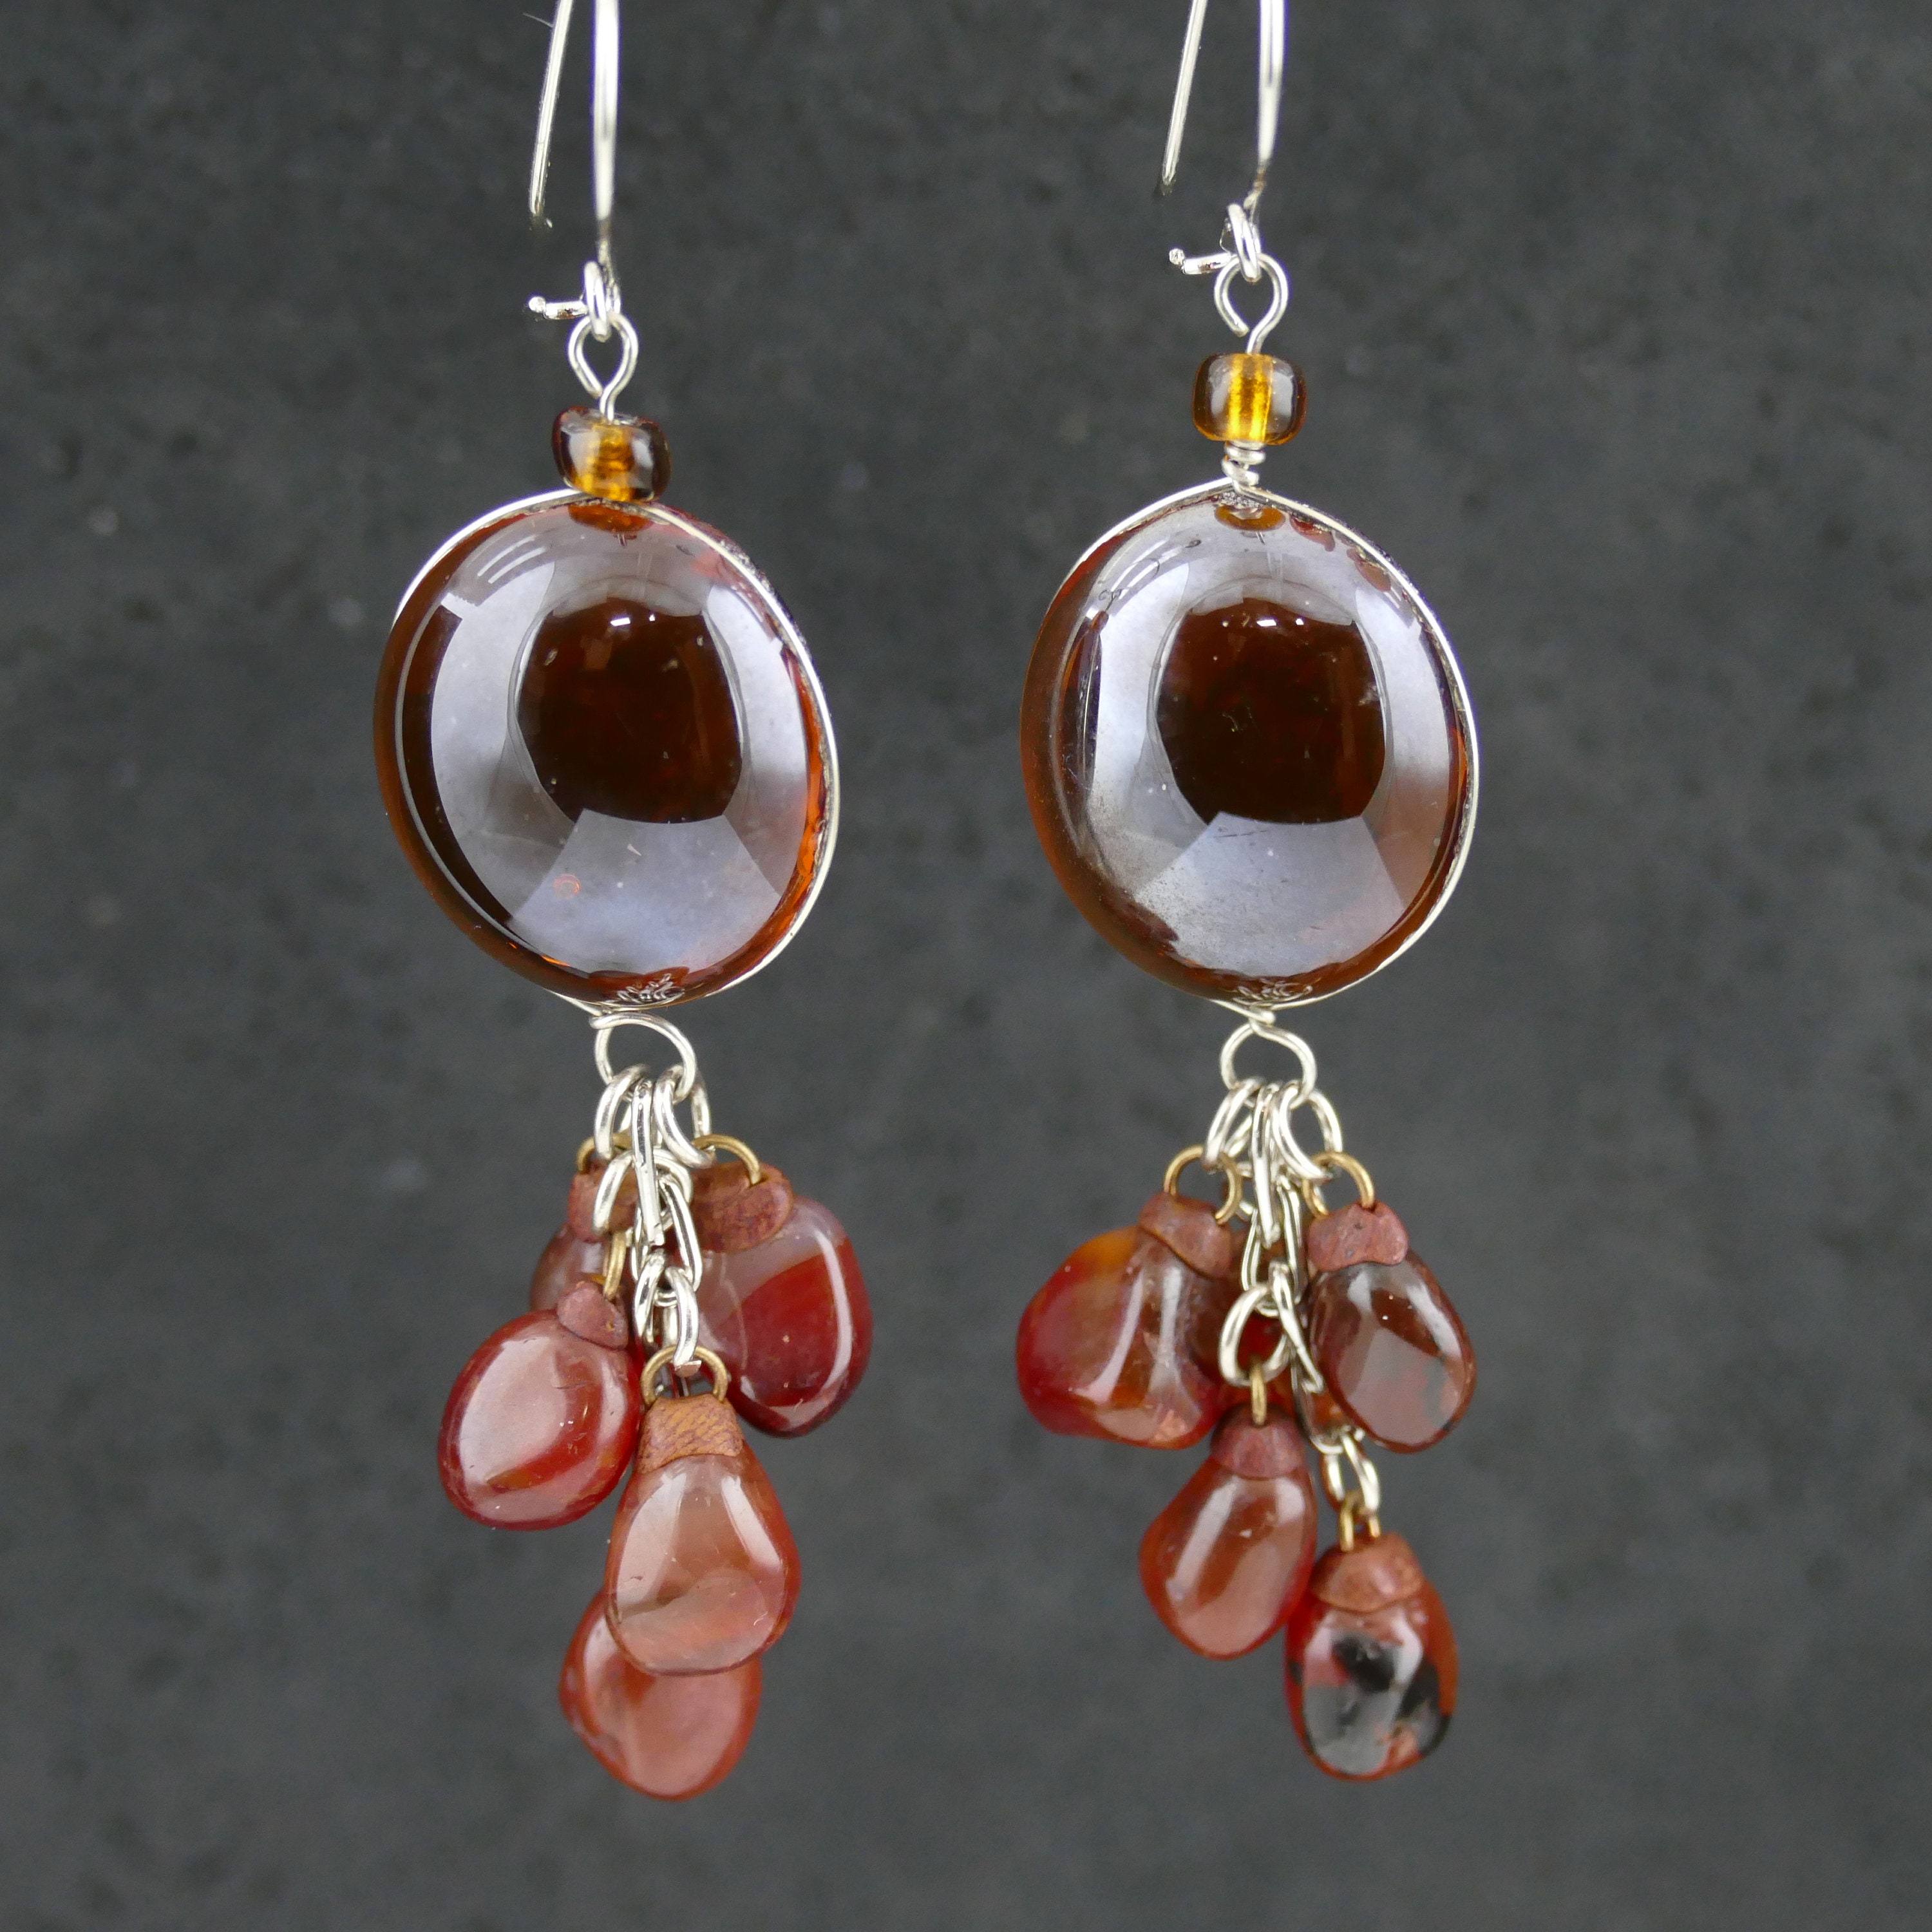 Bohemian Amber Earrings bohemian earrings bohemian jewelry | Etsy